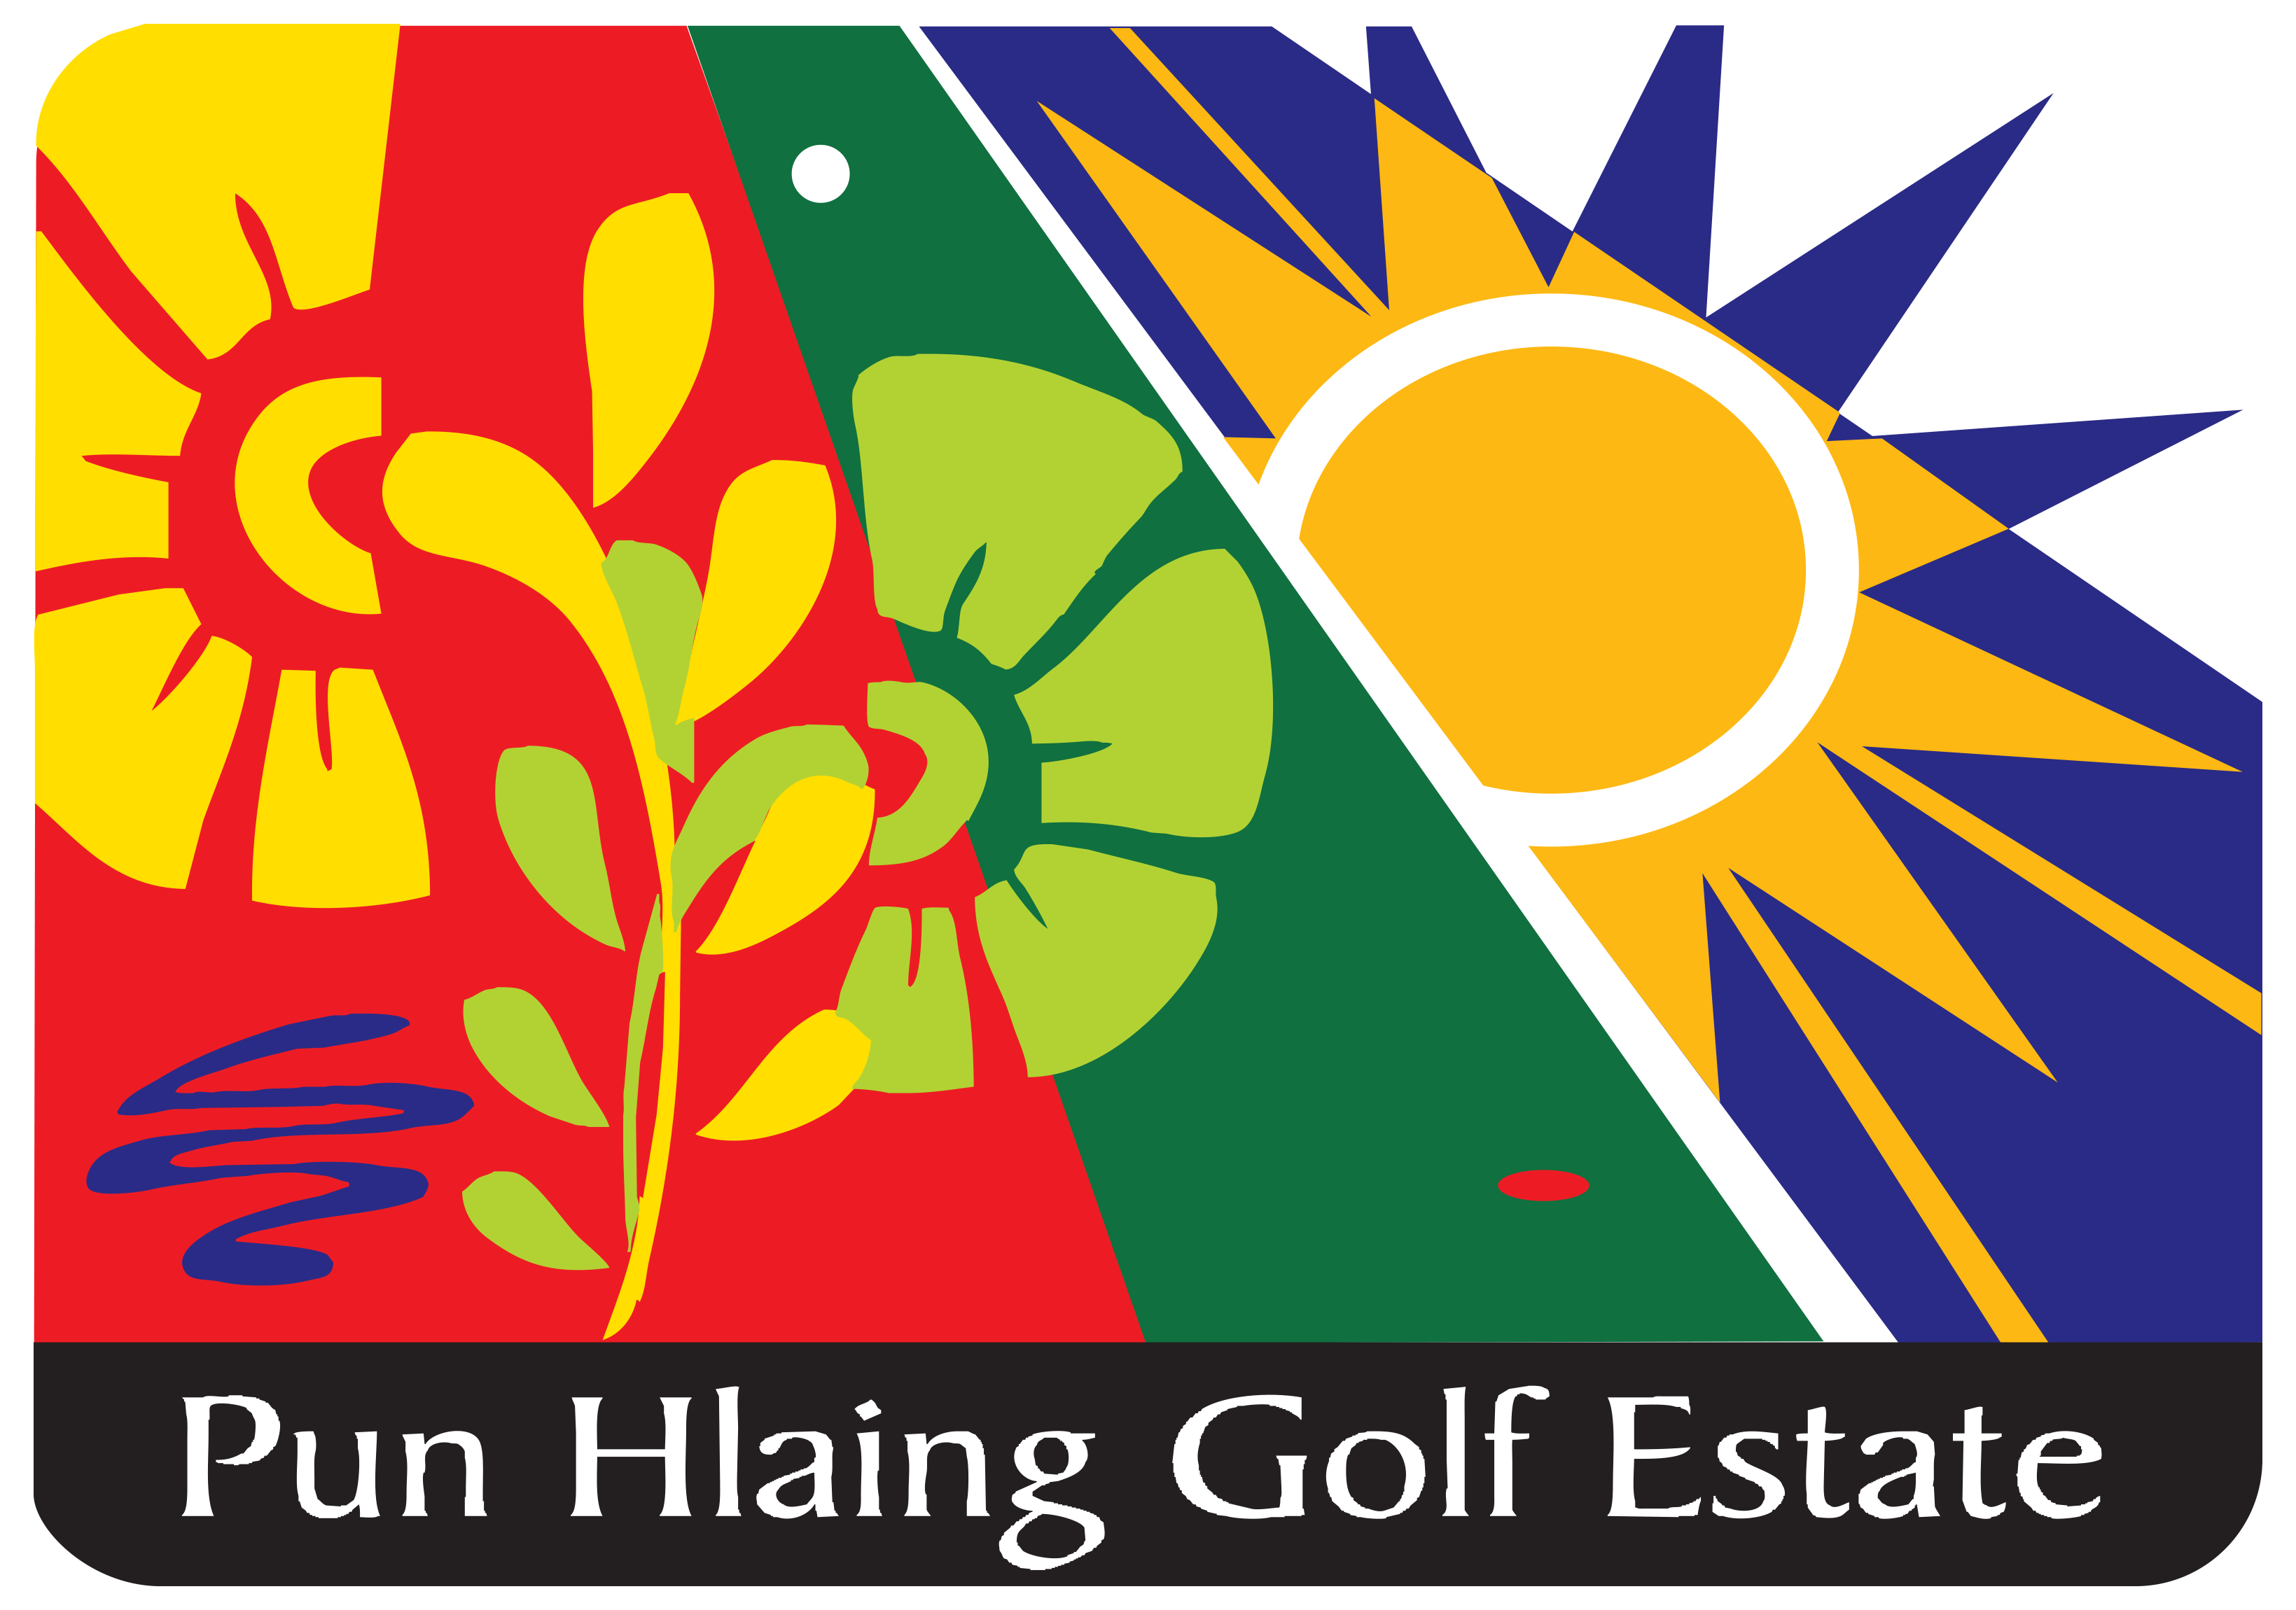 International, Spa-Yoma, Pun Hlaing Estate, Logo